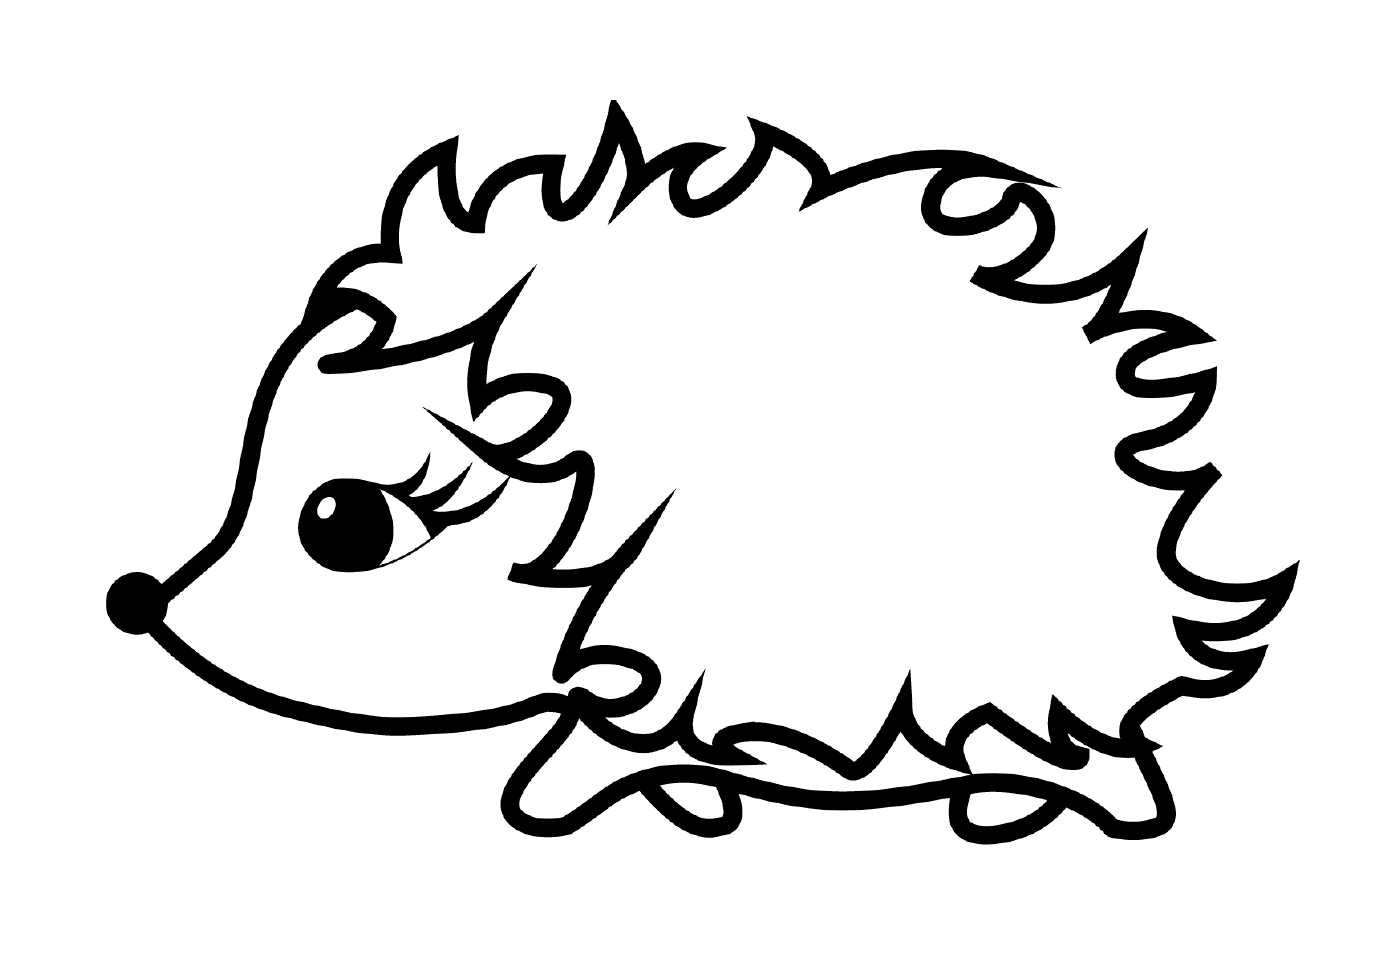  Hedgehog girovagando per il prato 